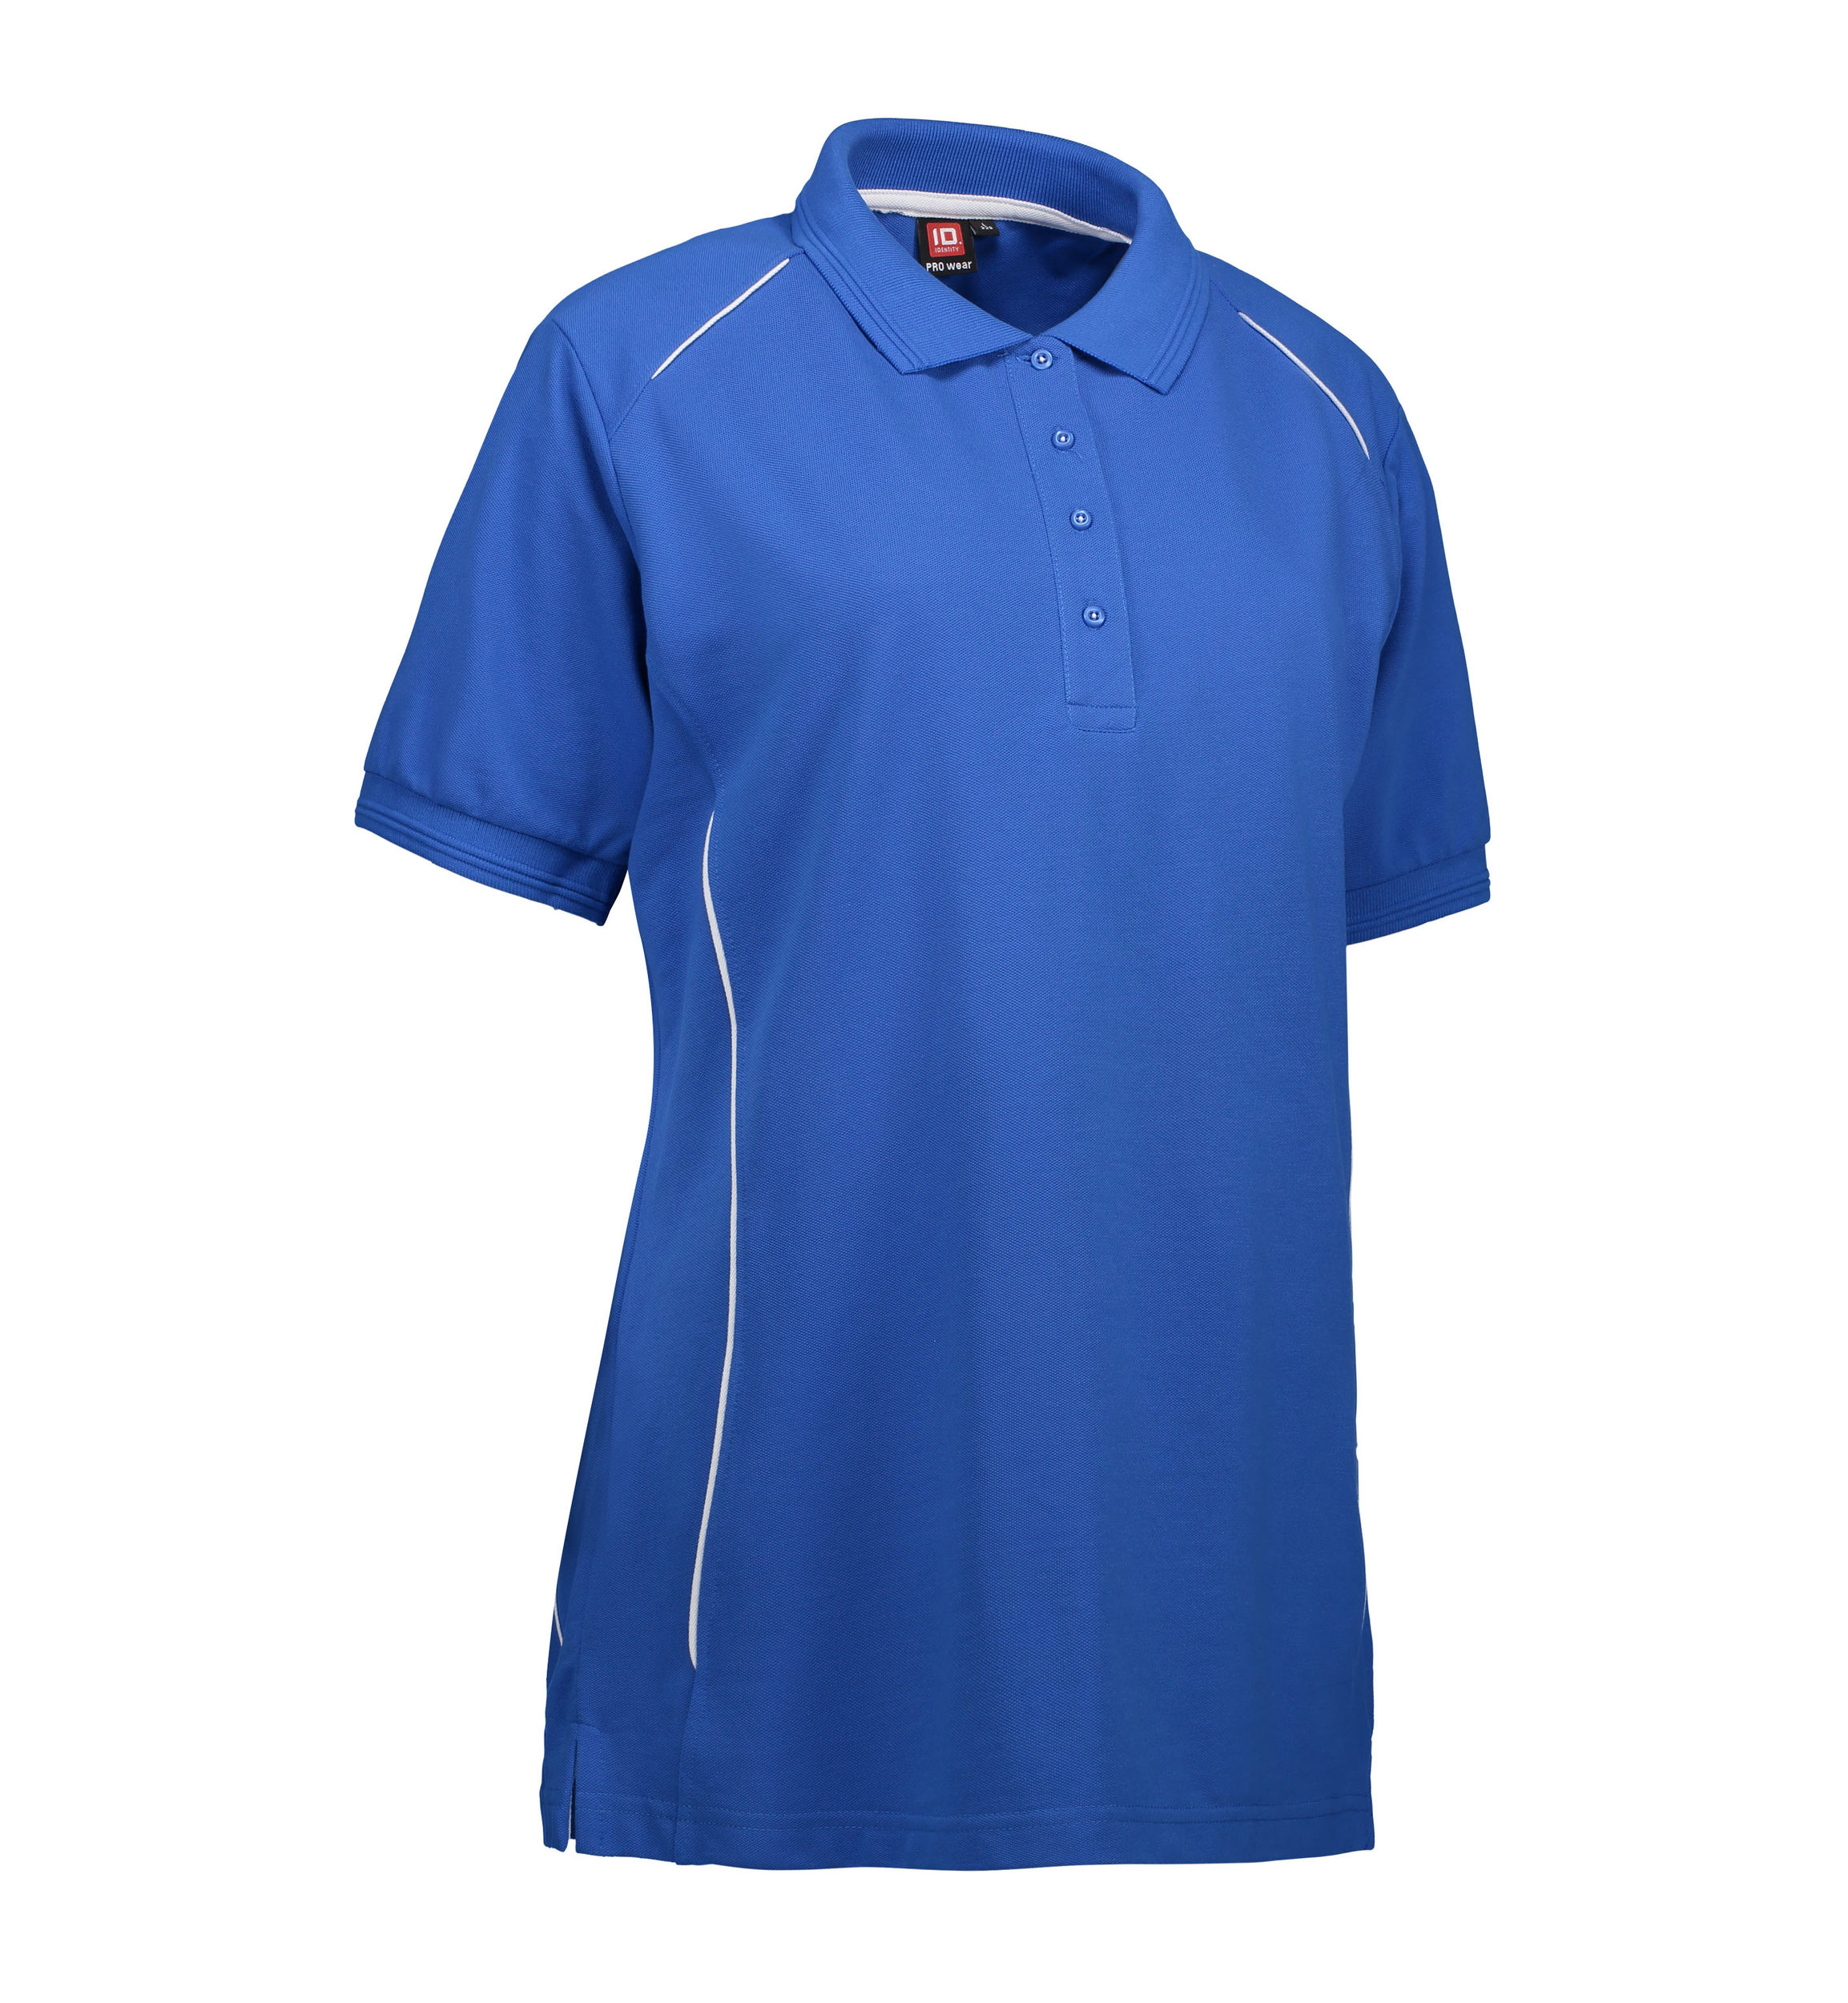 Se Slidstærk polo t-shirt i blå til damer - XL hos Sygeplejebutikken.dk